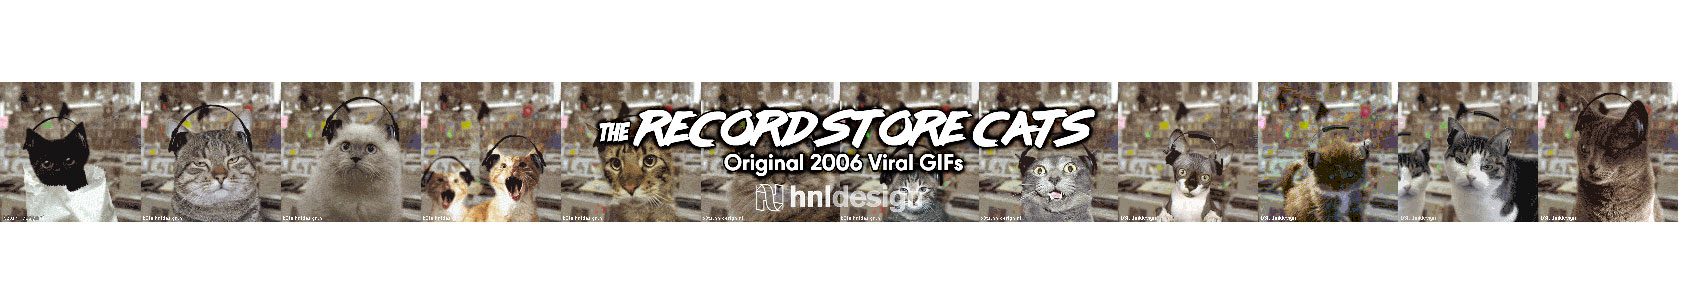 The Record Store Cats Originals